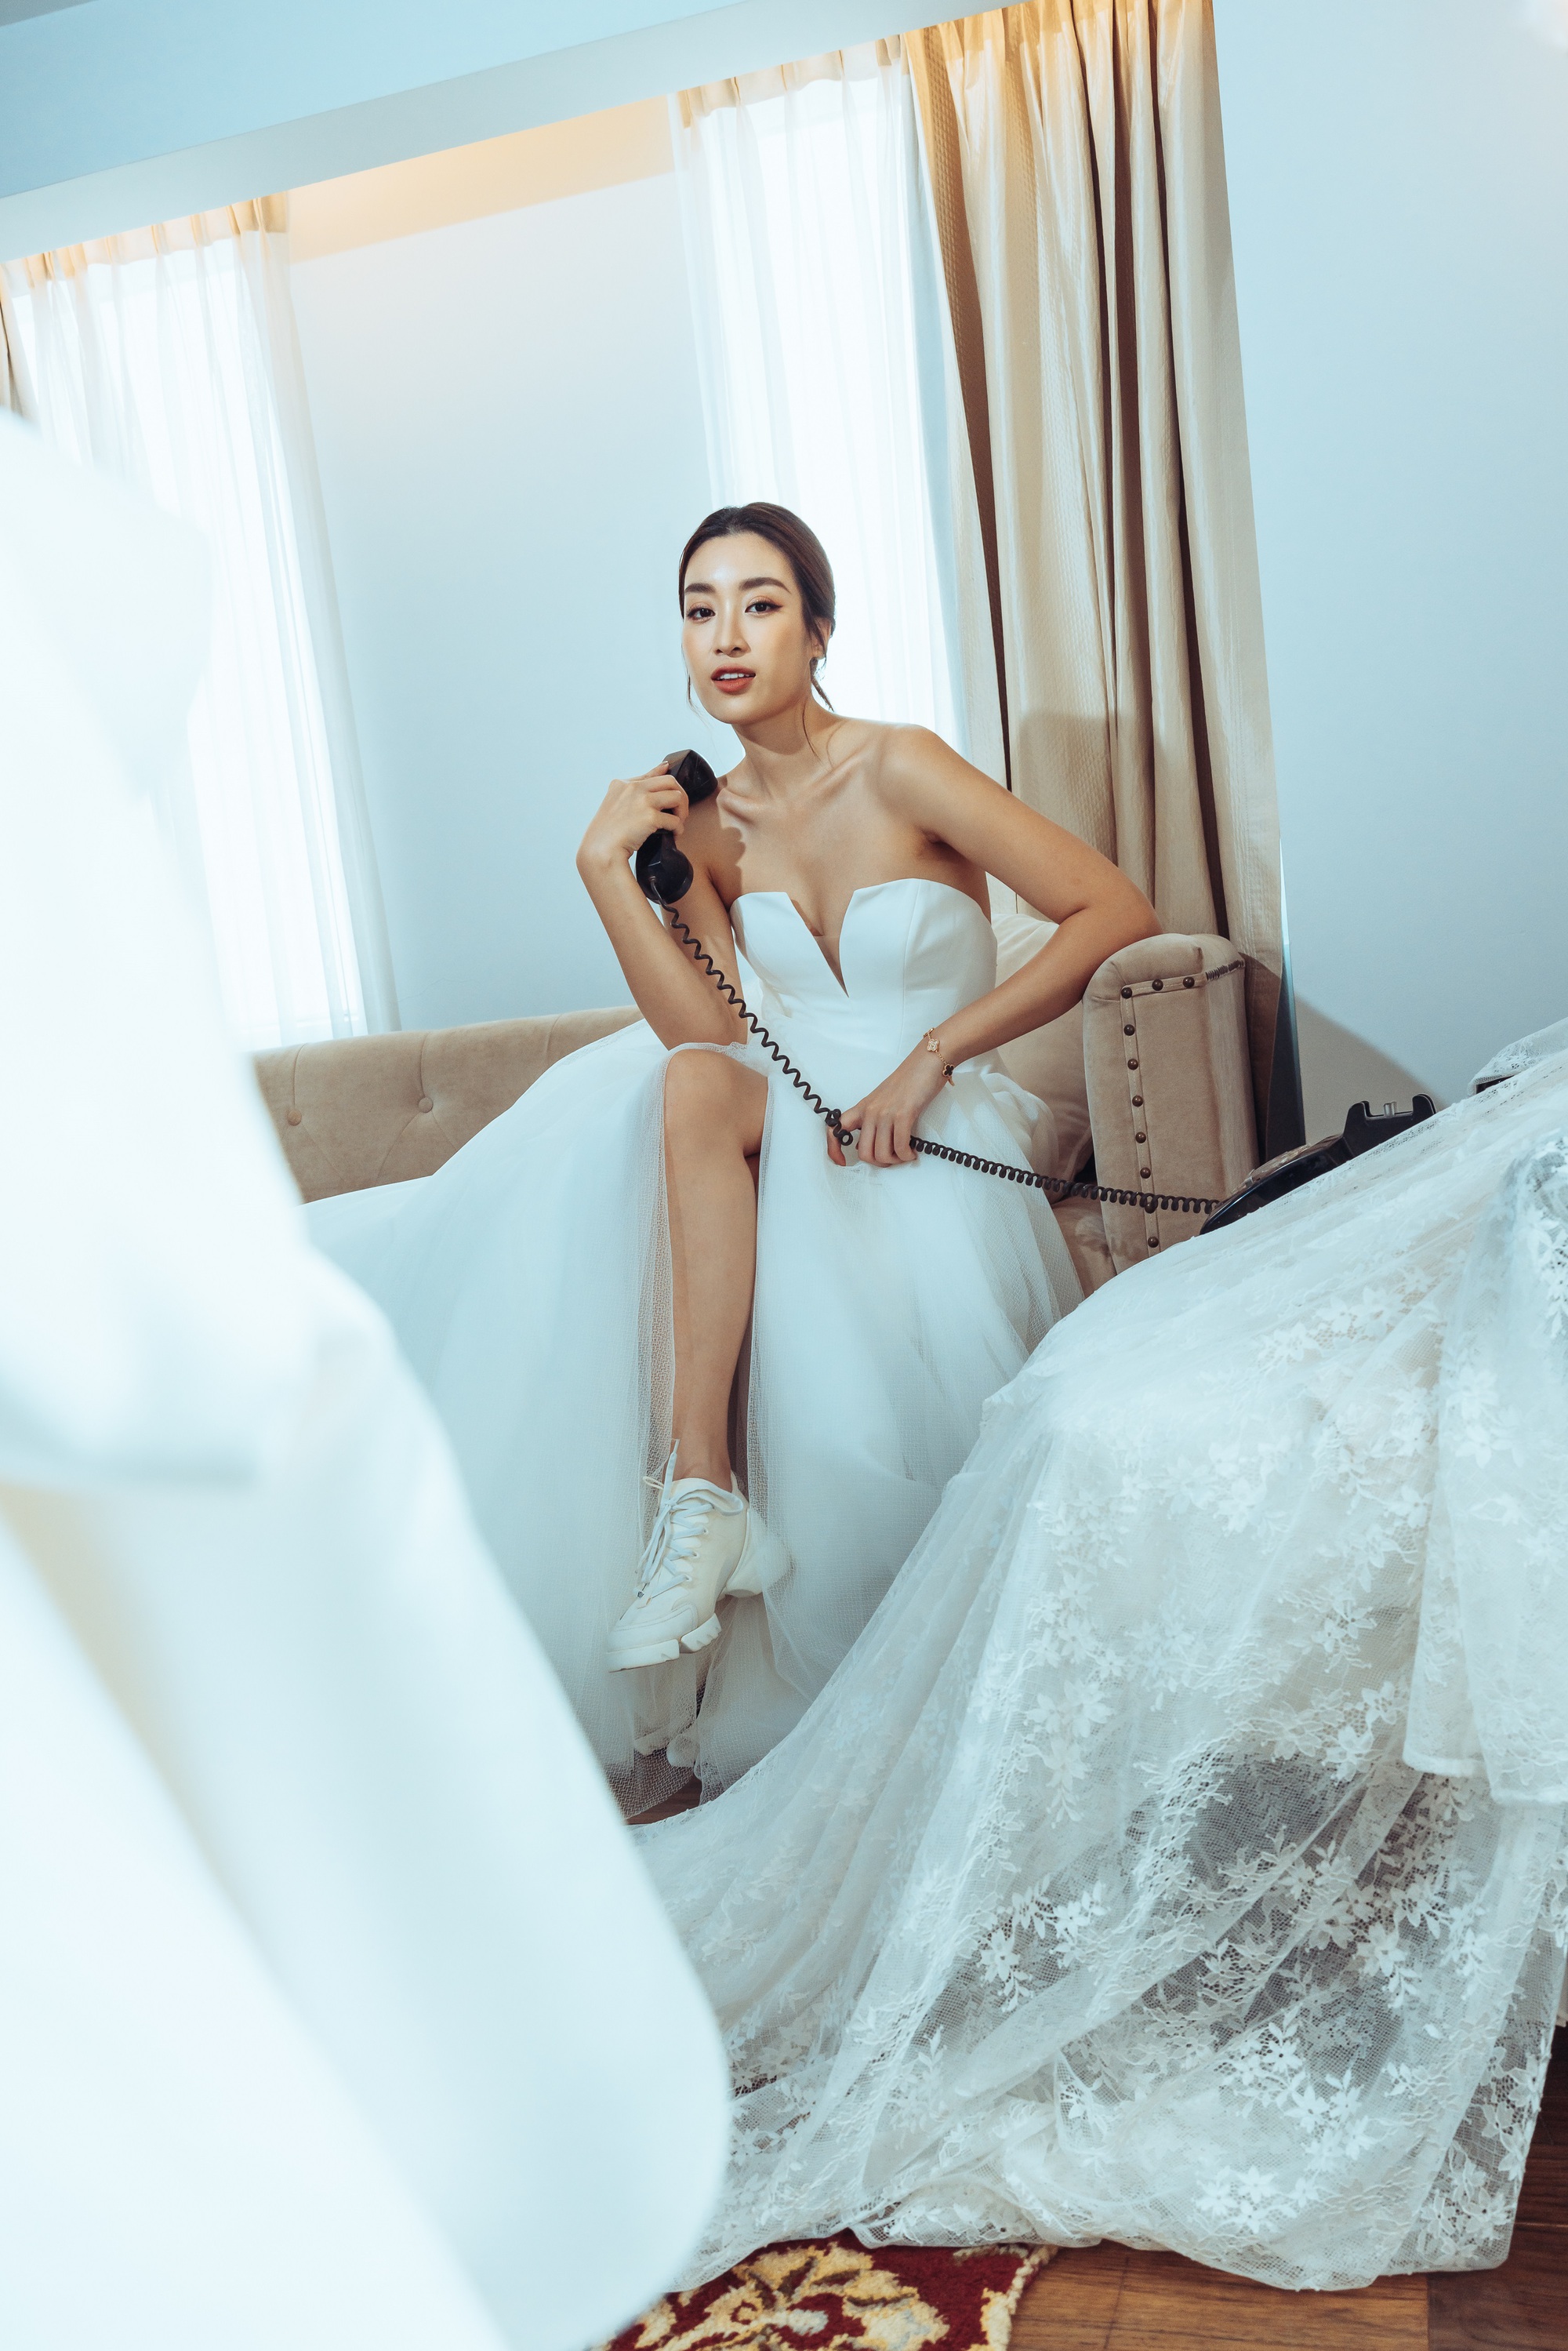 Hoa hậu Đỗ Mỹ Linh mặc váy cưới xinh đẹp khiến phụ nữ cũng phải rung động trước ngày lấy chồng - Ảnh 12.